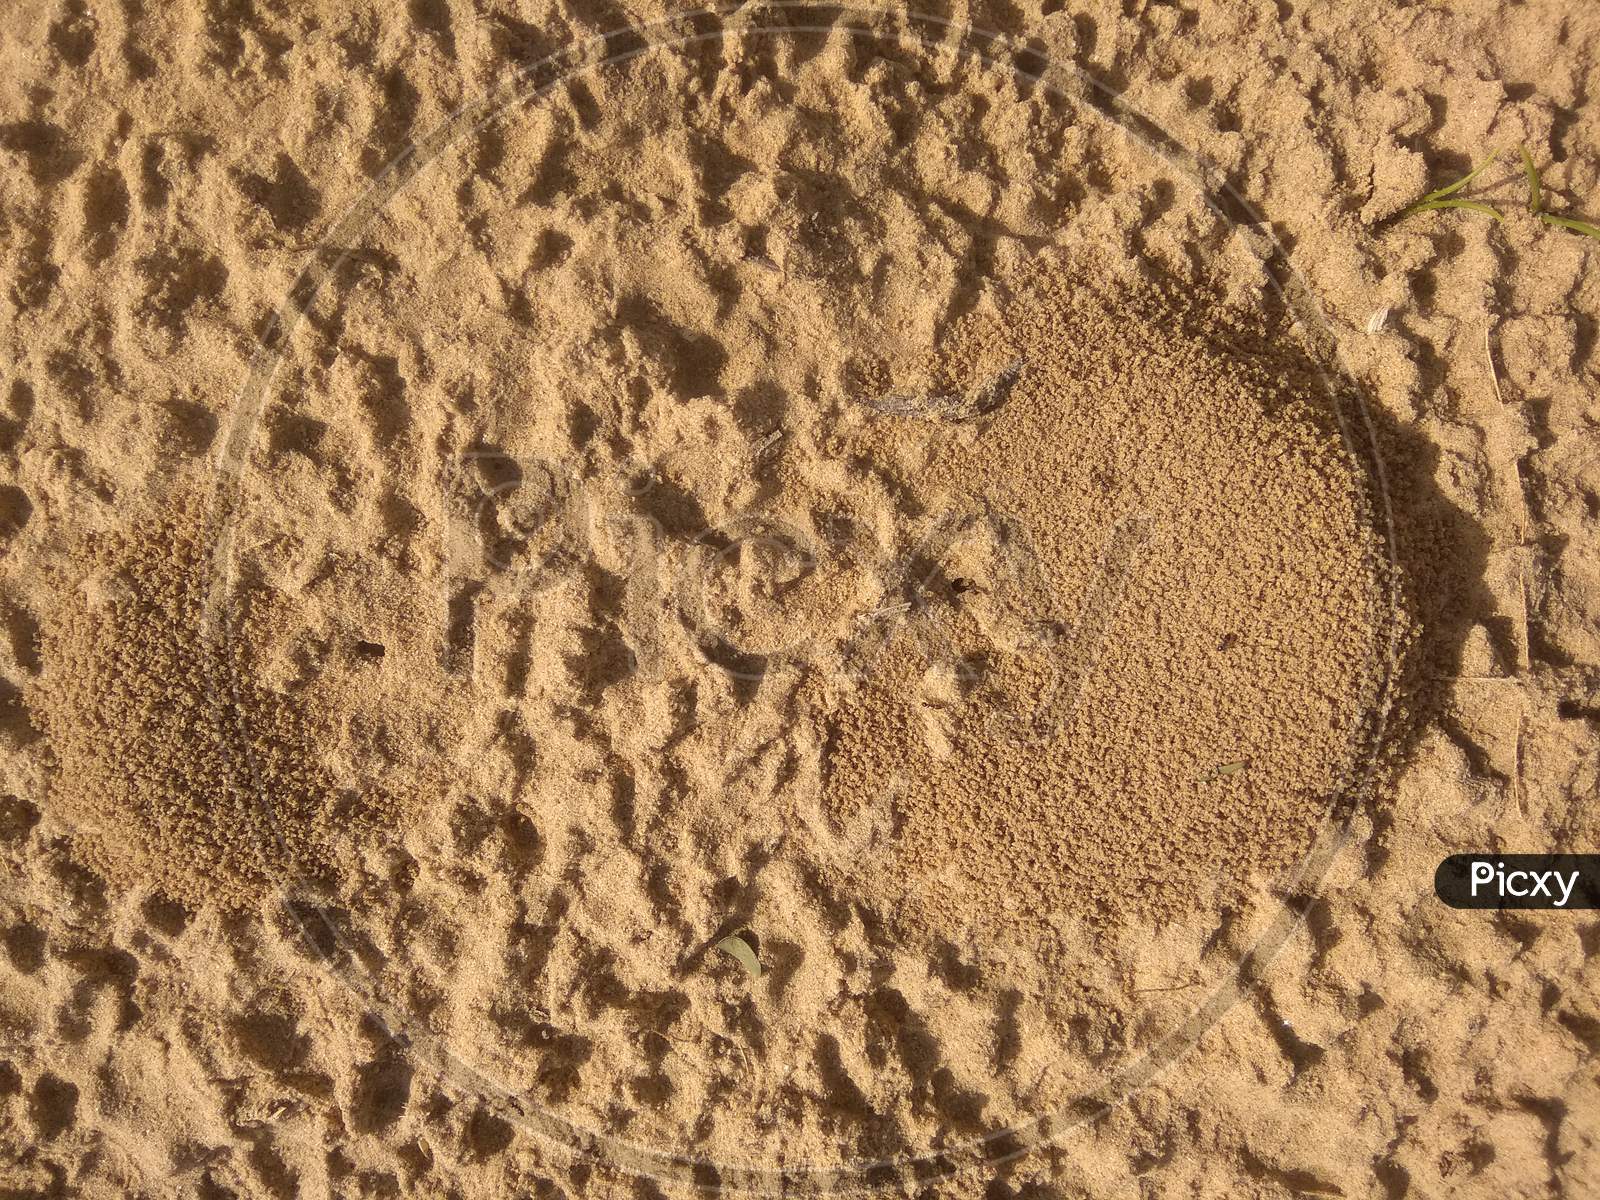 Desert soil made by ant